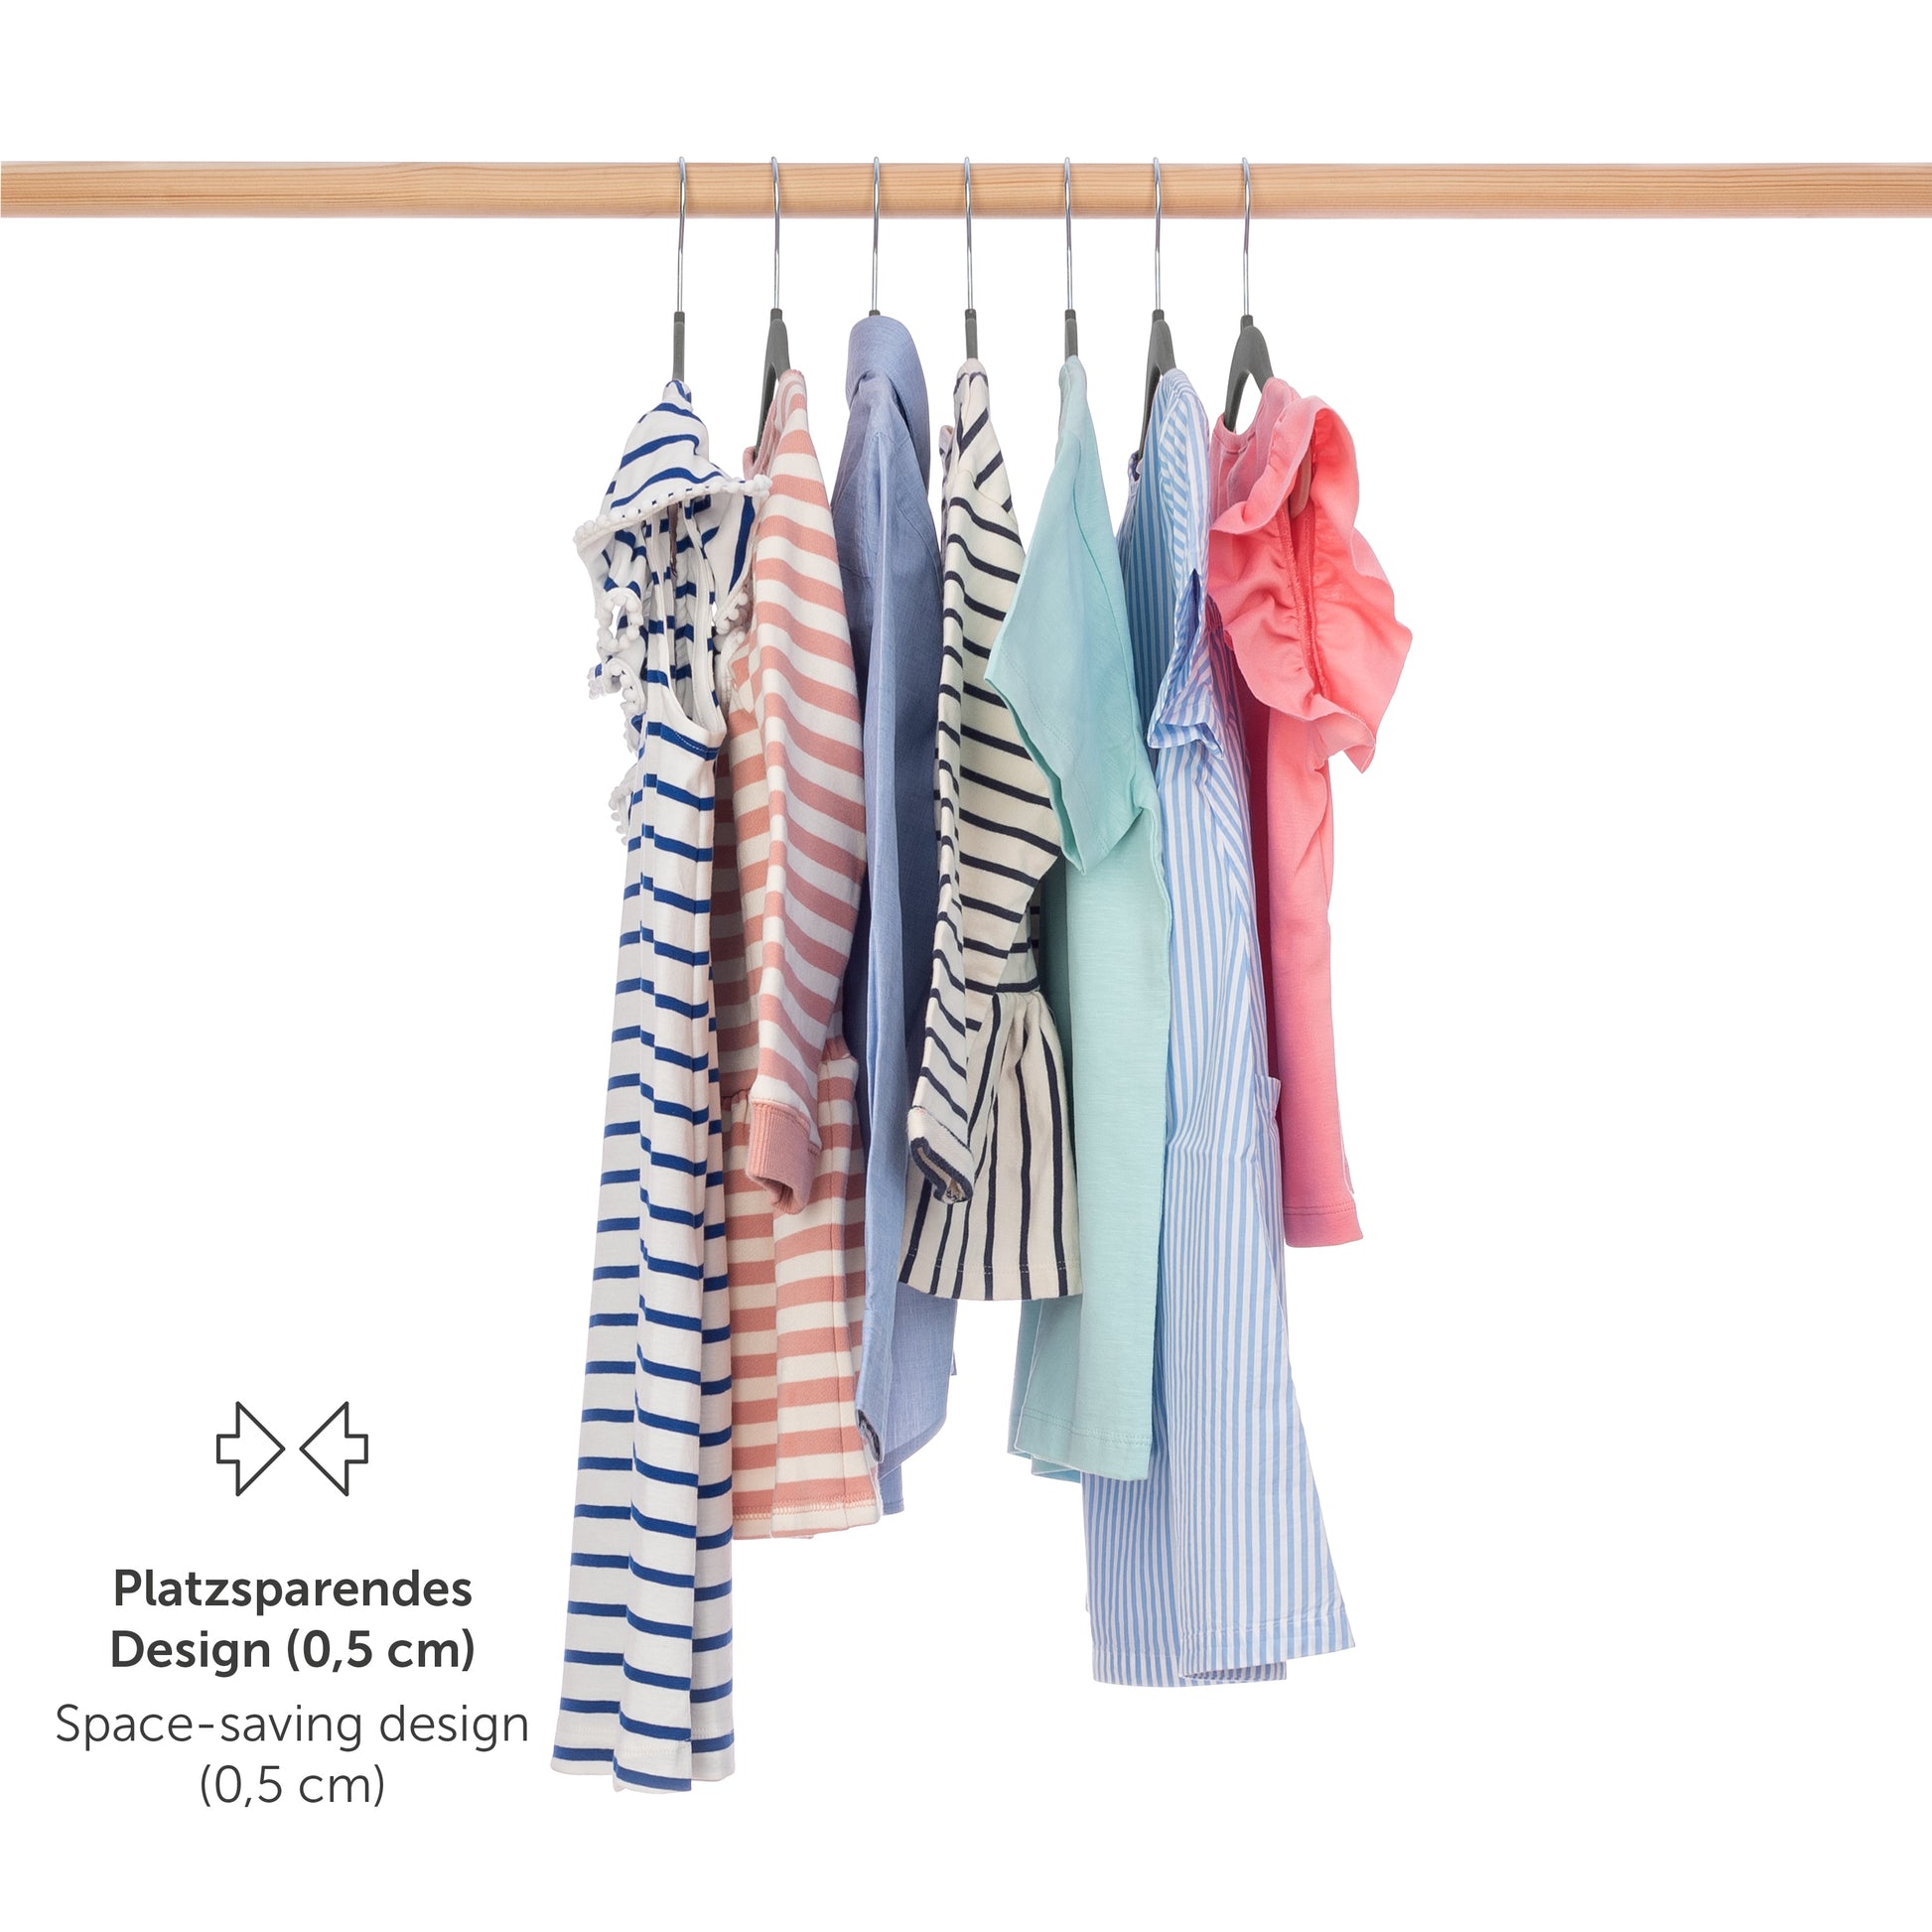 Verschieden gemusterte Kinderkleider auf grauen Kleiderbügeln an einer Stange hängend mit Hinweis auf platzsparendes Design